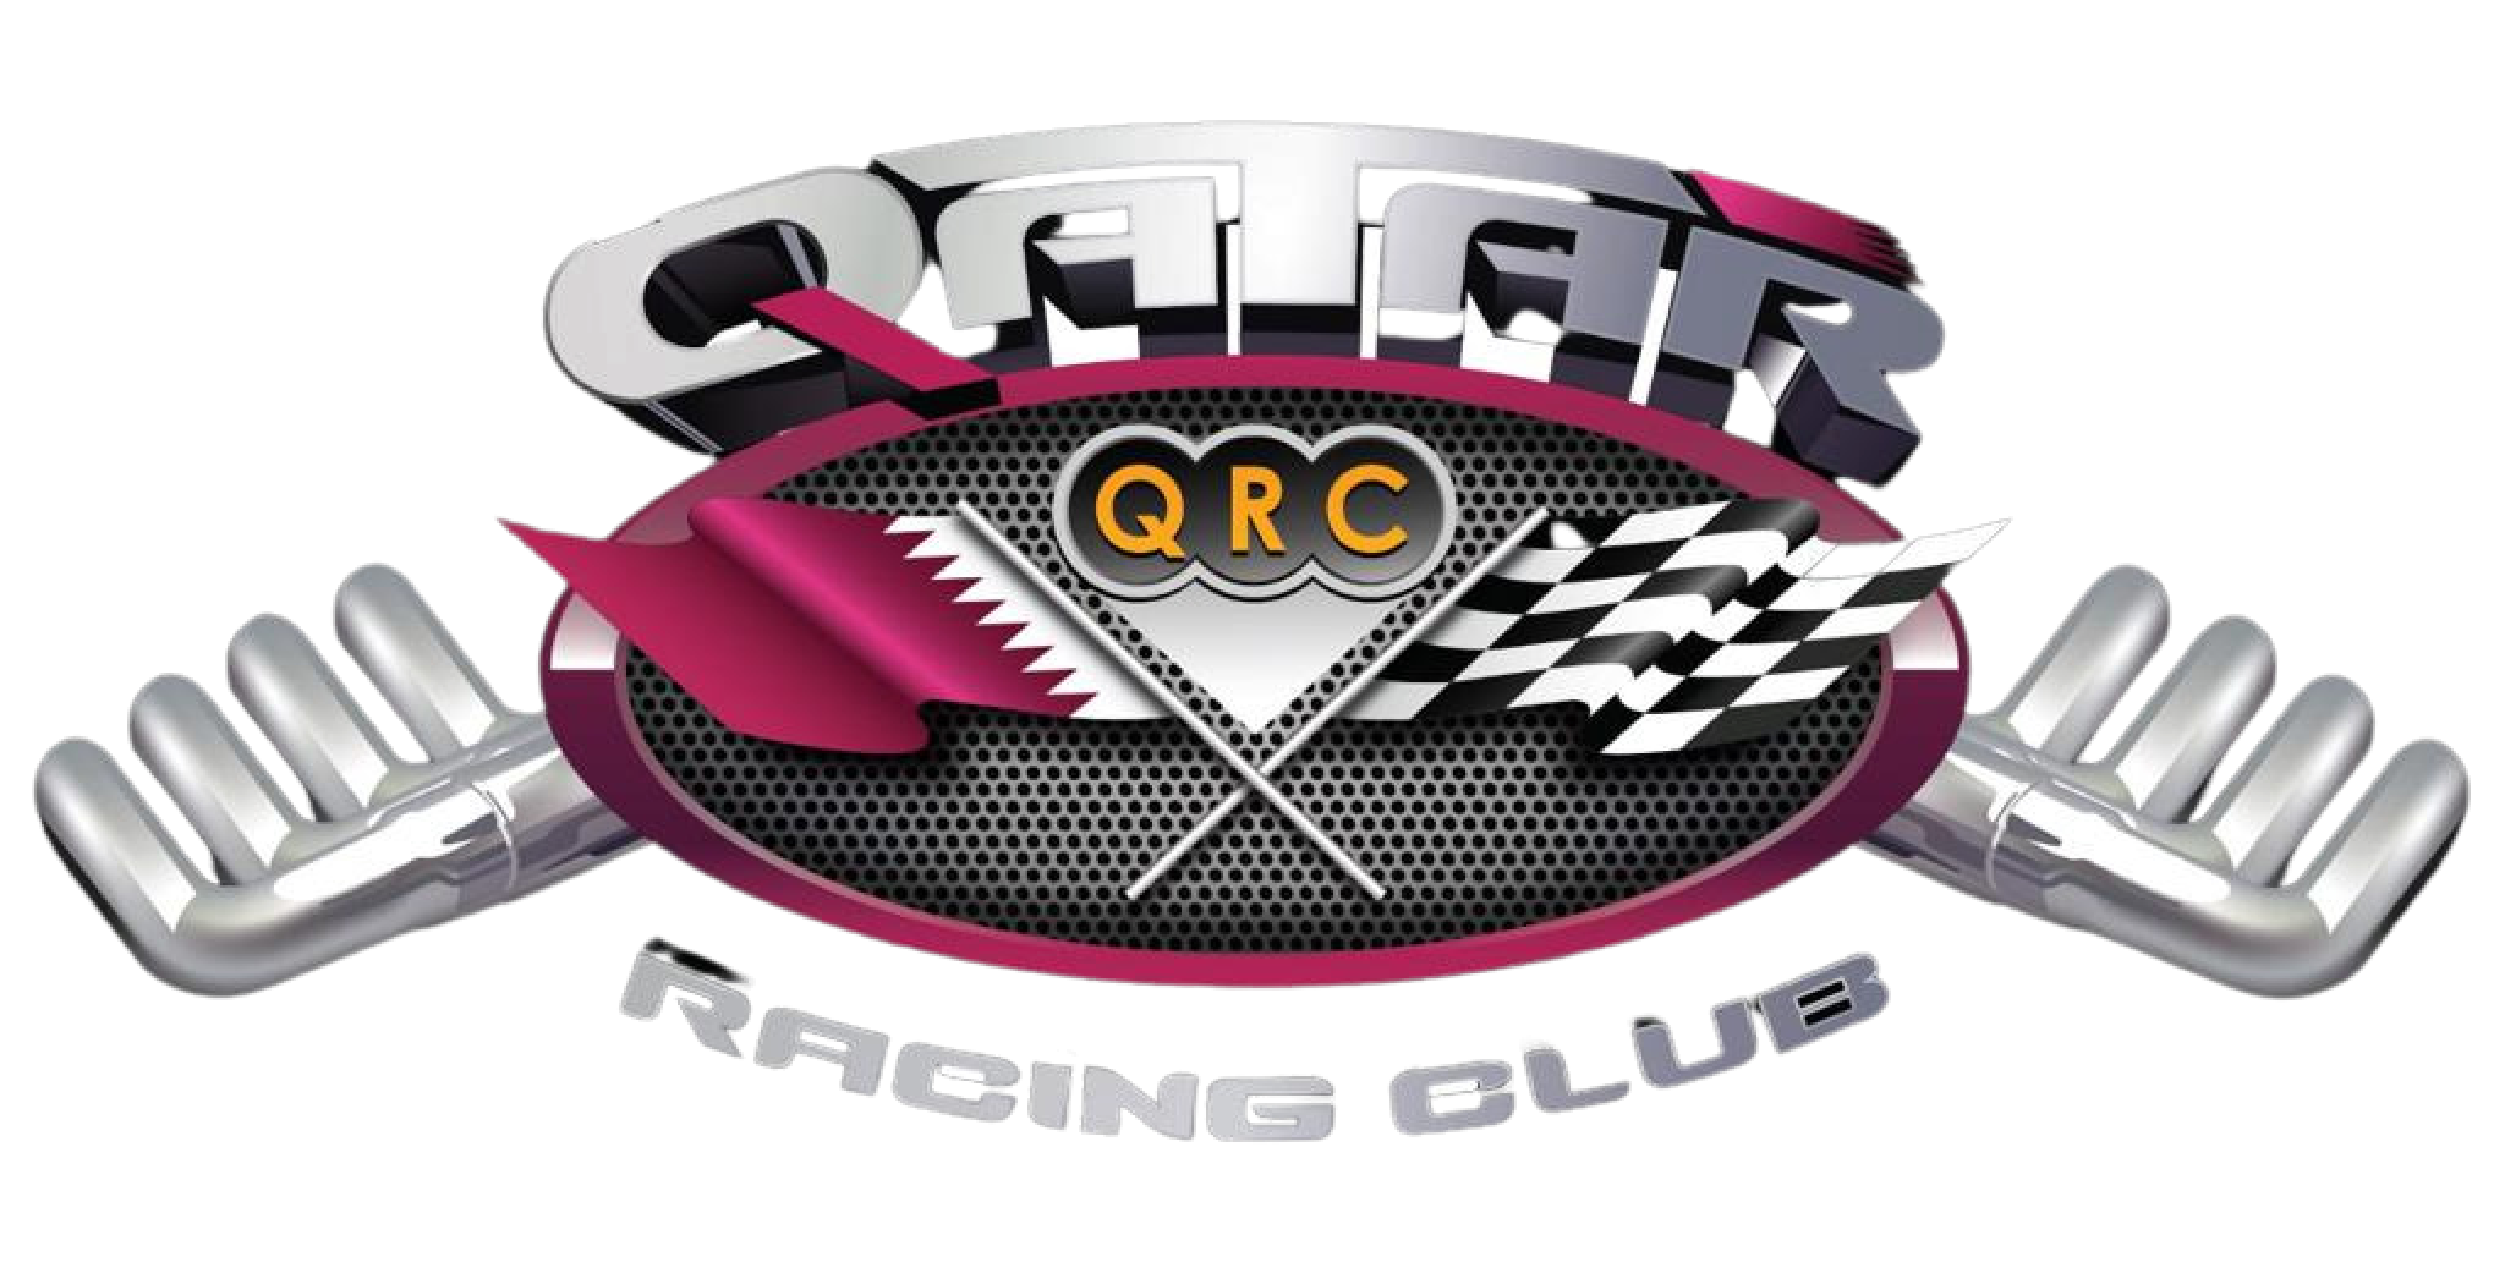 Qatar Racing Club